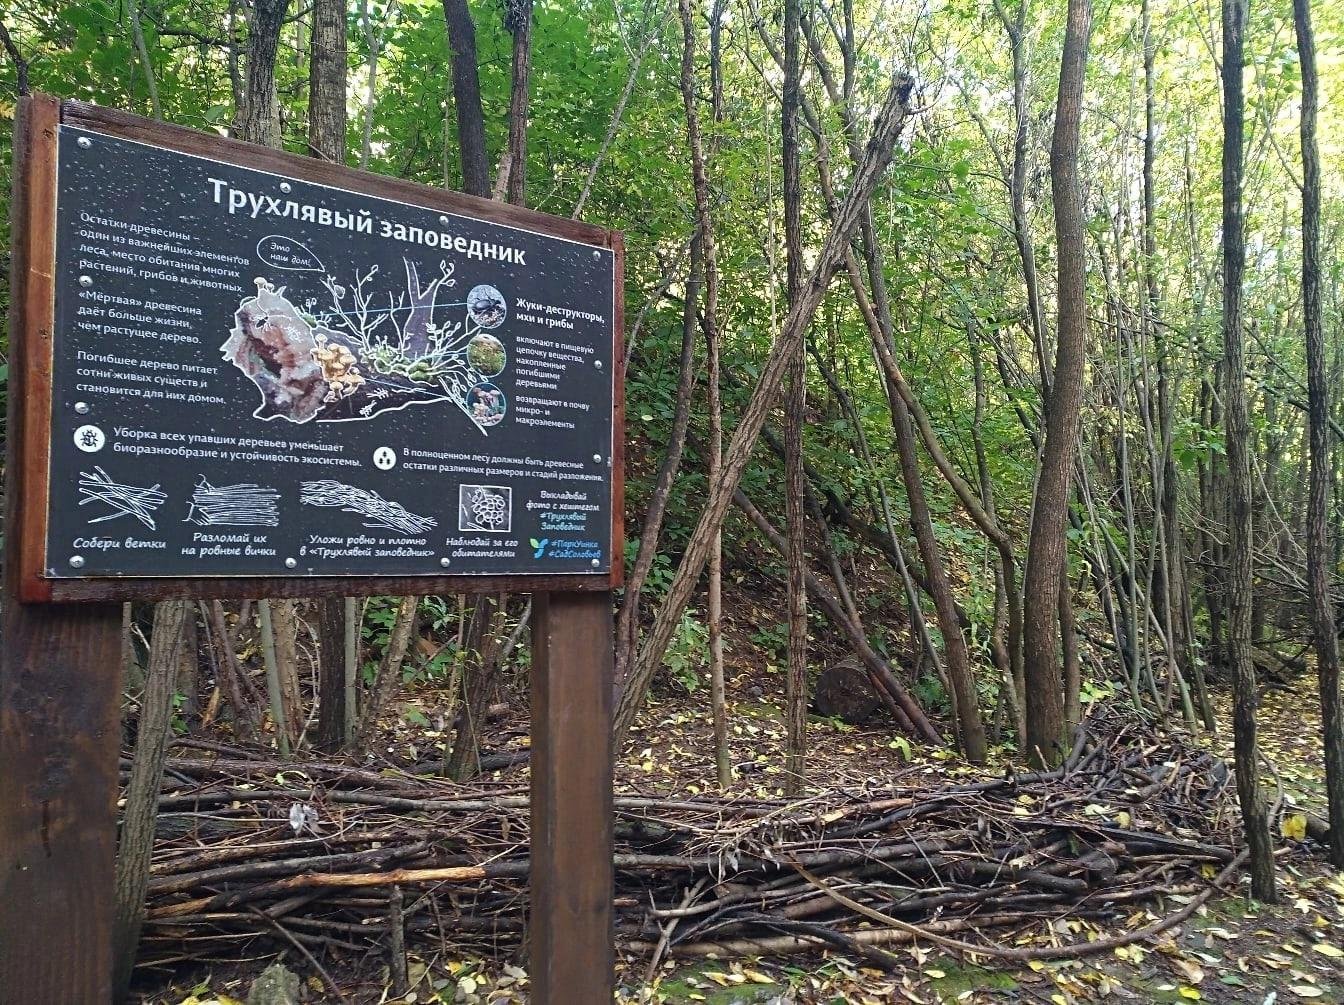 Трухлявый заповедник - напоминает о том, что остатки древесины - важная часть леса, место обитания растений, грибов, насекомых